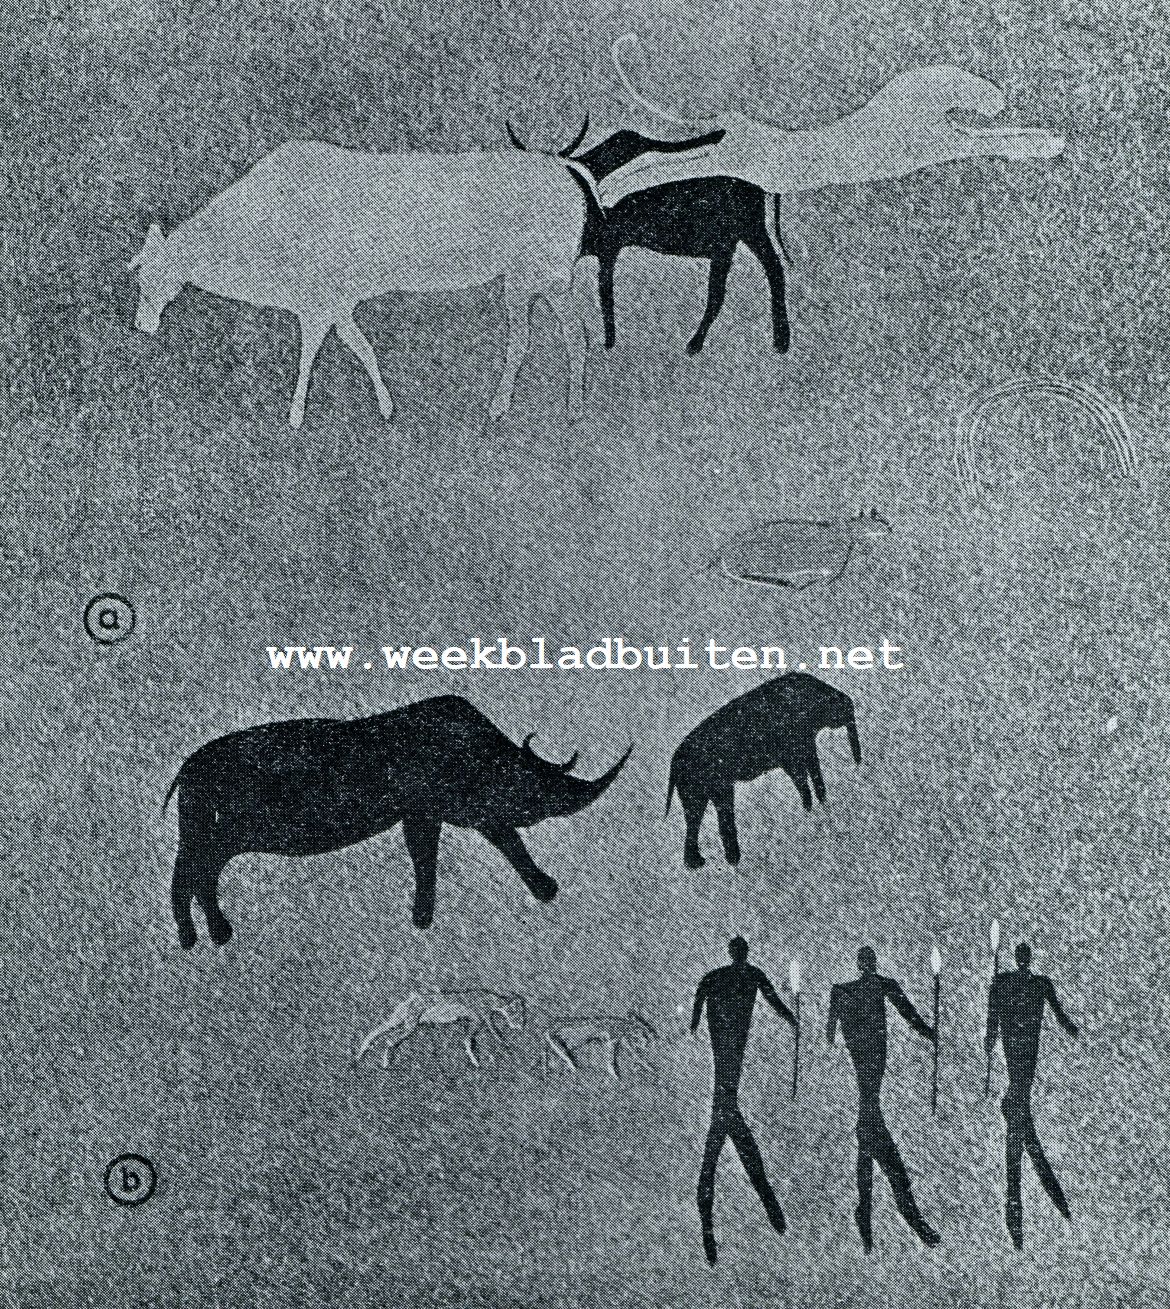 Boschjesman schilderingen. A. Uit Zuurfontein (runderen, leeuw), B. Uit Zandfontein (neushoorn, olifant, jakhalzen, kaffers). Naar Helene Tongue, Bushman Paintings